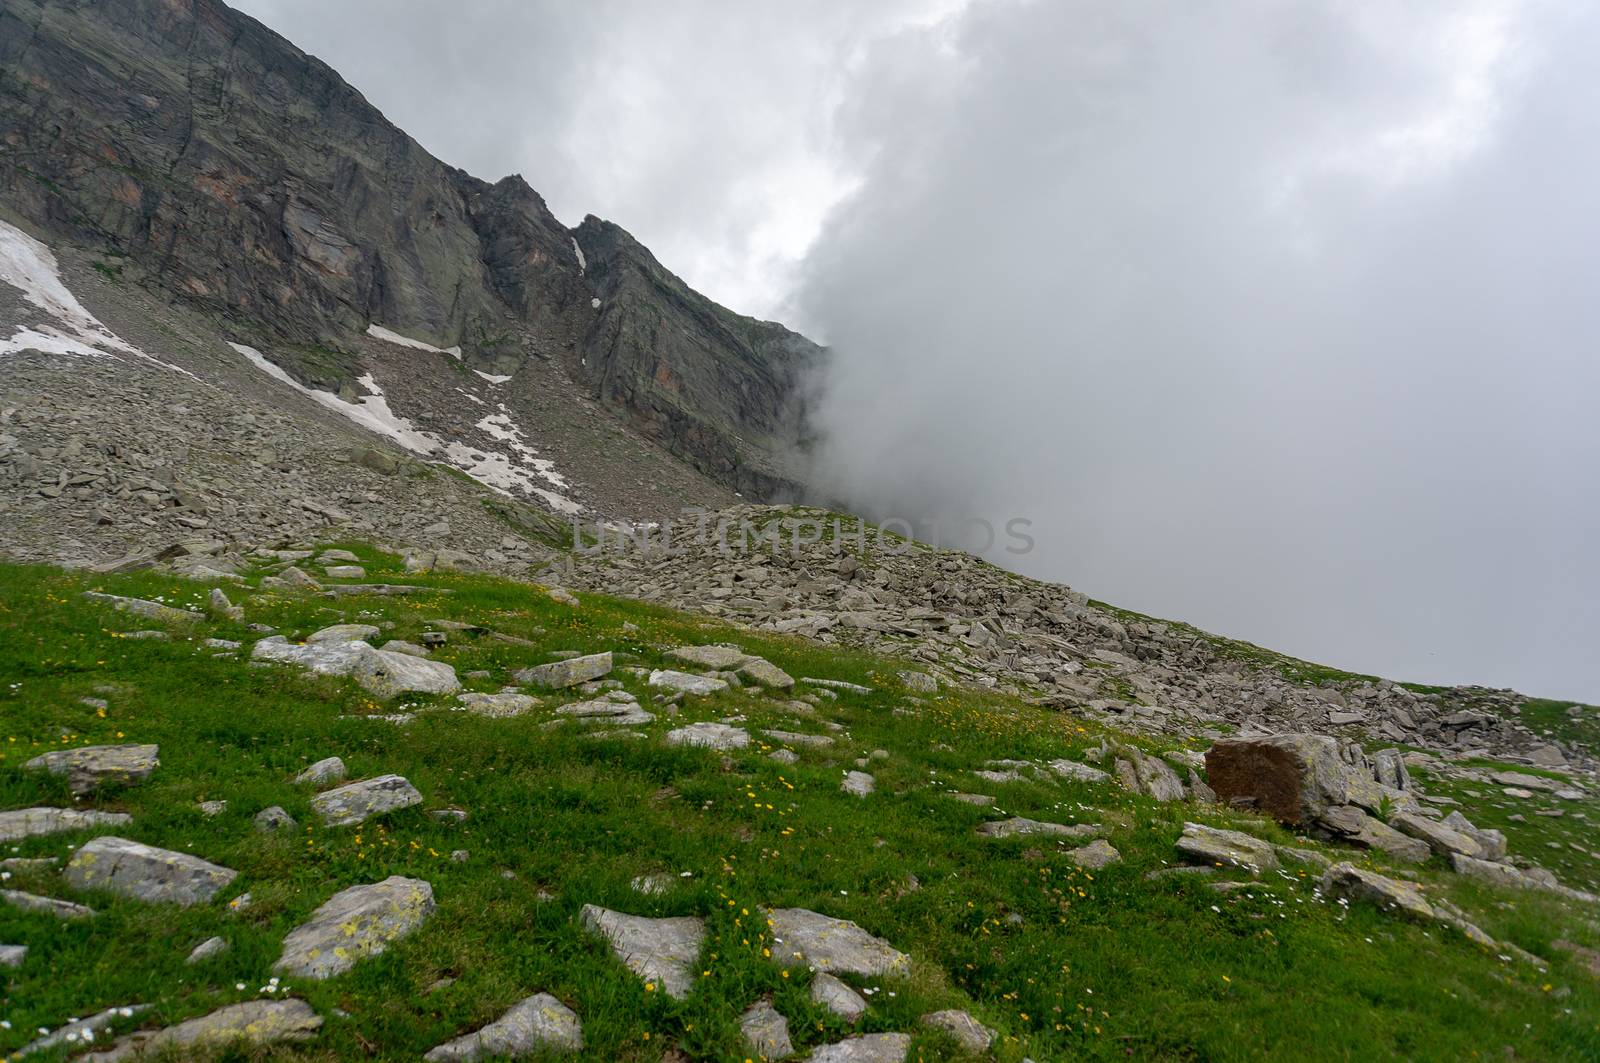 Hiking in Italian Alps landscape by javax